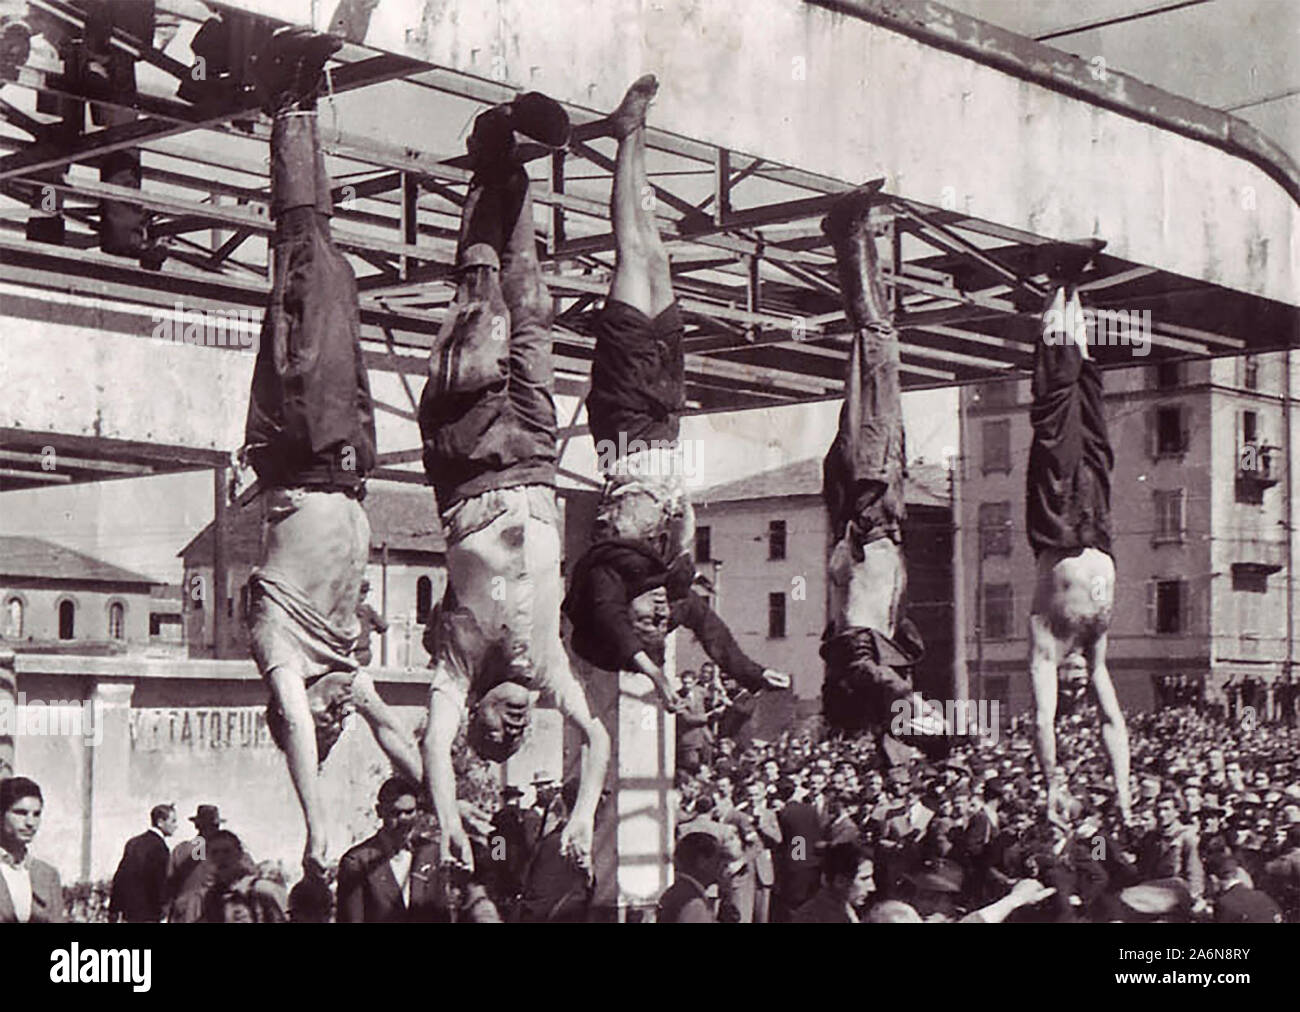 El cadáver de Benito Mussolini junto a su amante Claretta Petacci y los de otros ejecutados fascistas, en exhibición en Milán el 29 de abril de 1945, en la Piazzale Loreto, en el mismo lugar que los fascistas habían mostrado los cuerpos de 15 civiles milanés hace un año después de ejecutarlos en represalia por la actividad de la resistencia. La fotografía es de Vincenzo Carrese. 29 de abril de 1945 Foto de stock